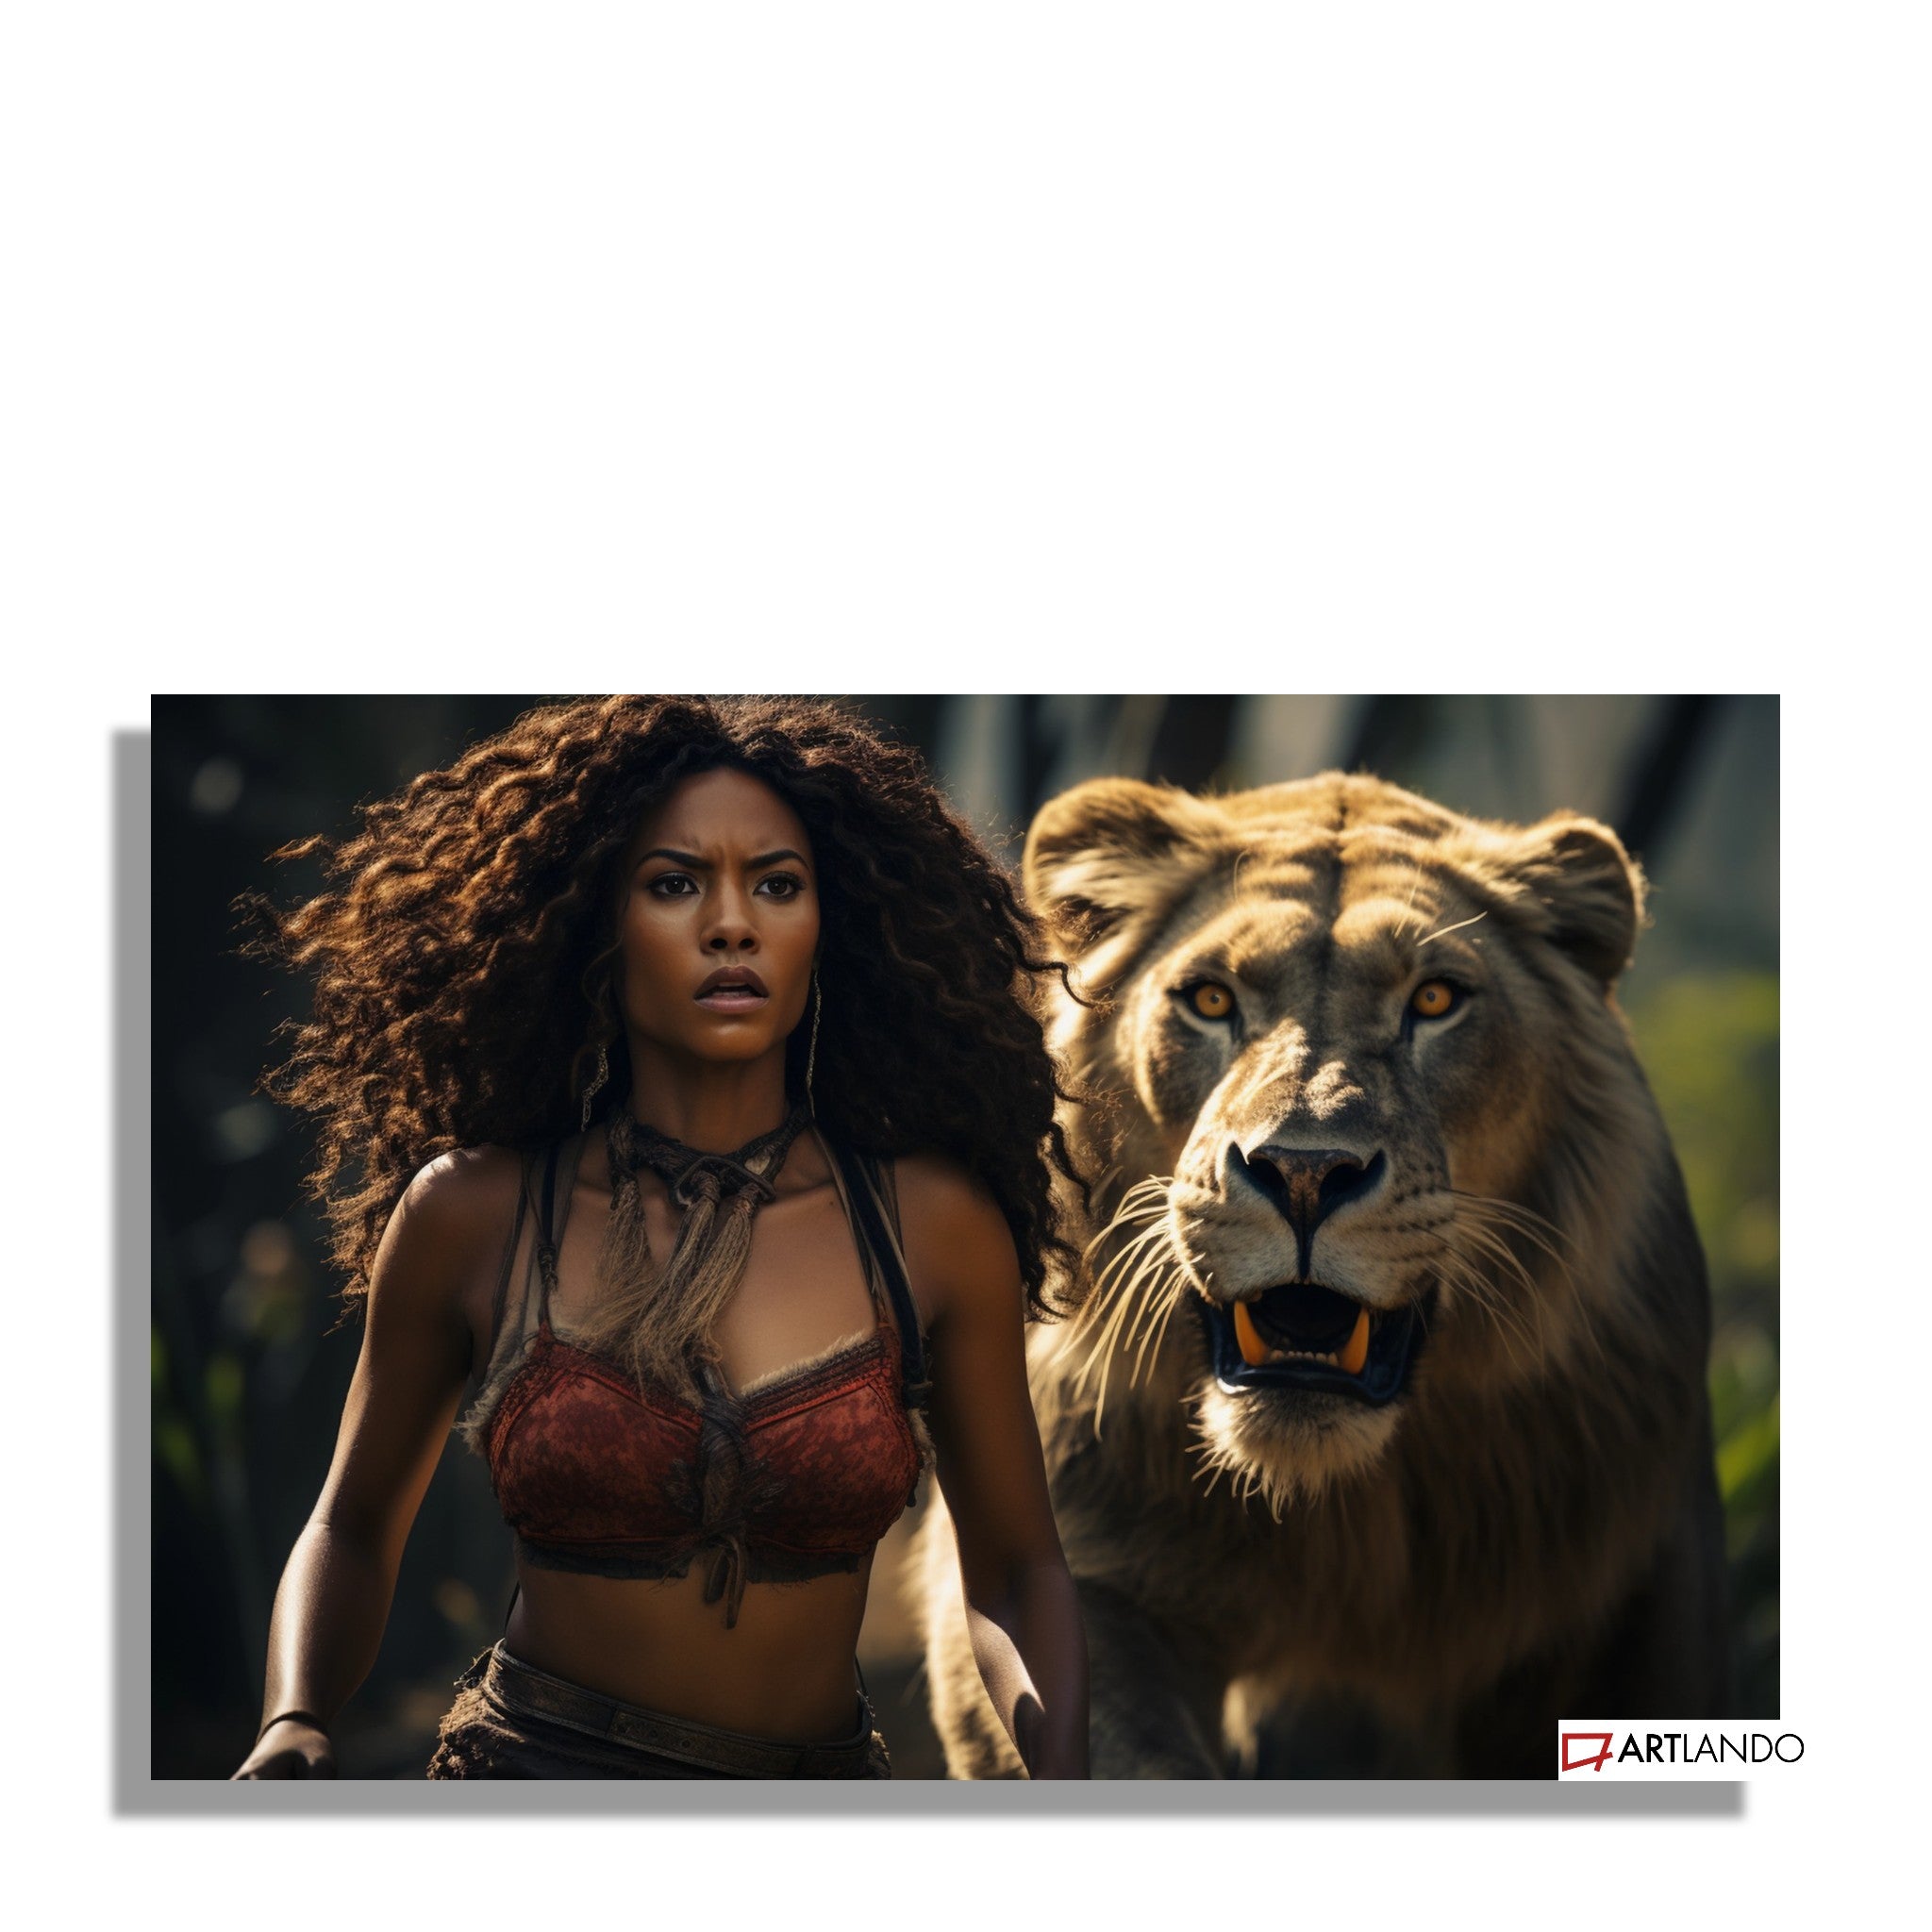 Tapfere Frau mit Löwin aus prähistorischer Zeit